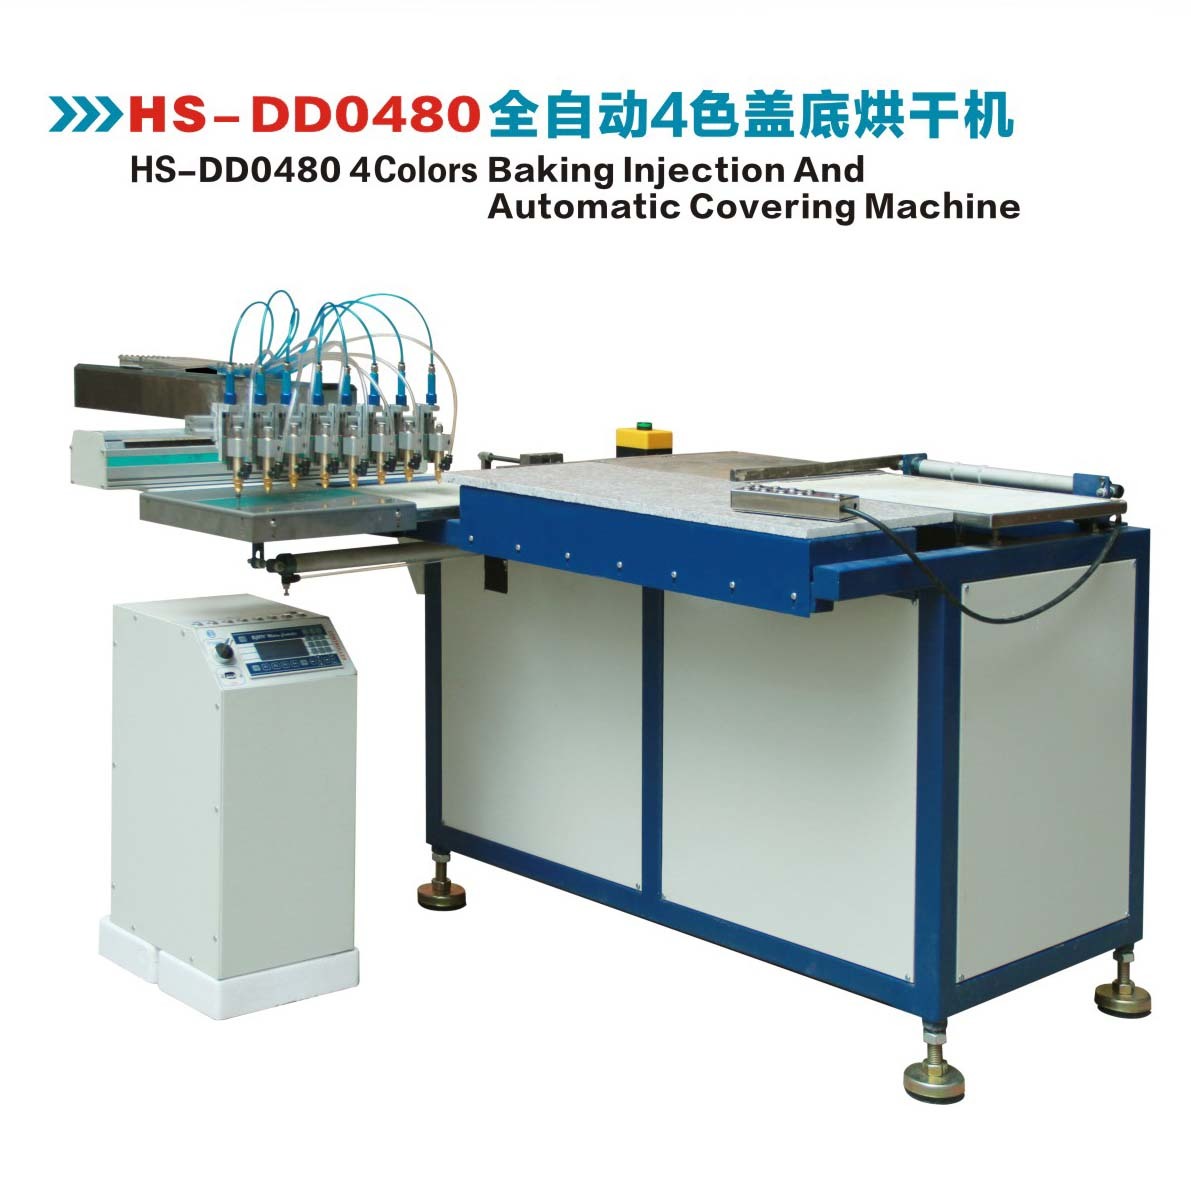 HS-DD0480全自动4色盖底烘干机